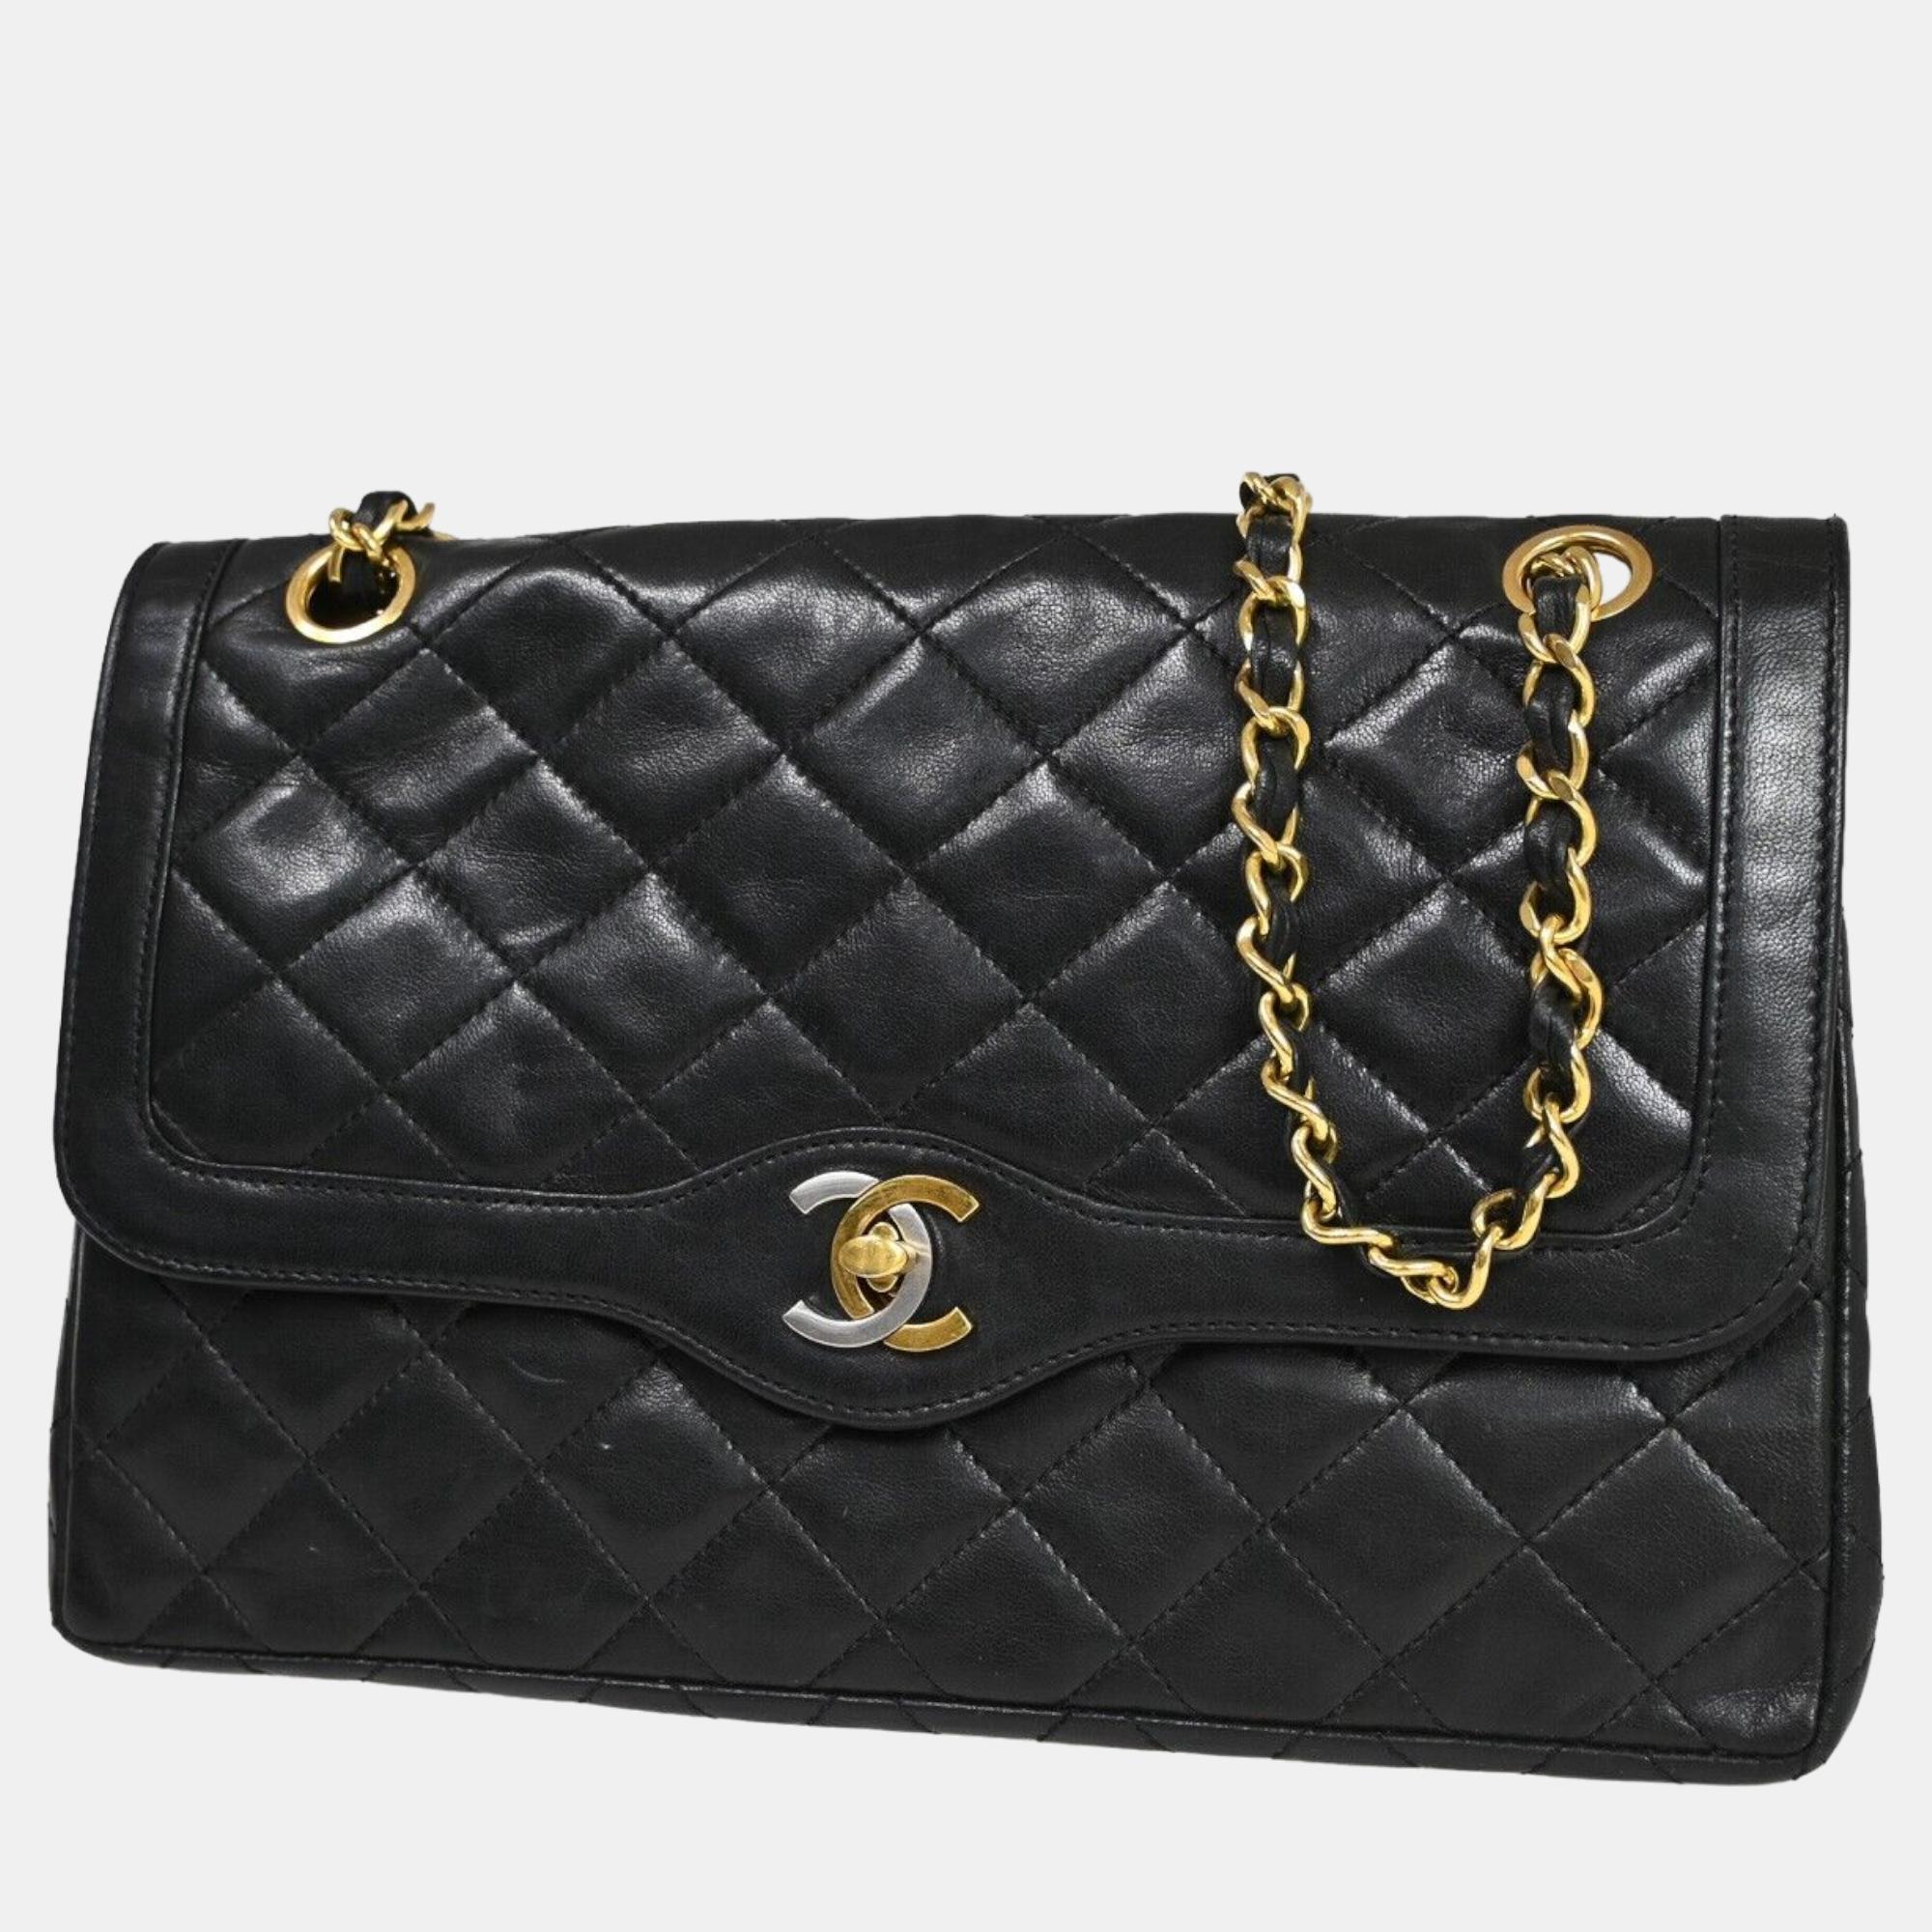 Chanel black leather paris double flap shoulder bag